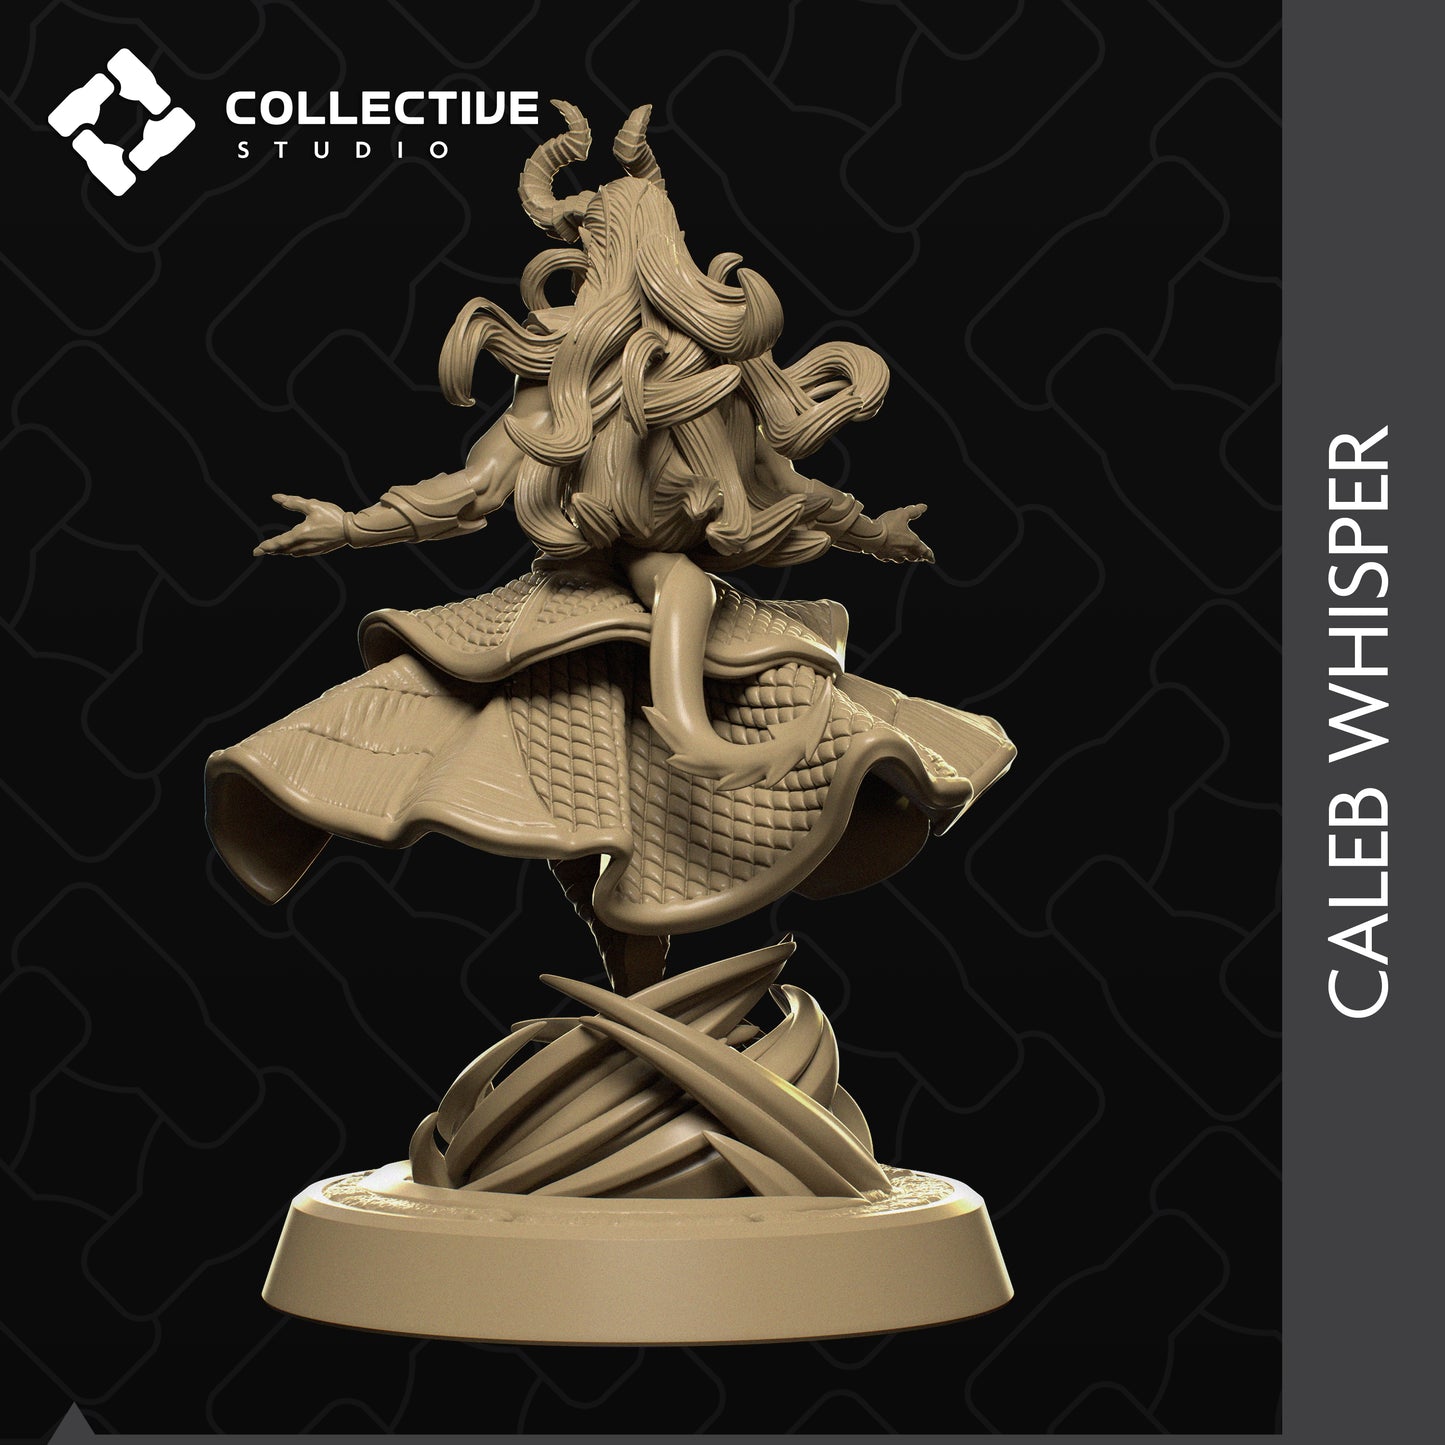 Tiefling Warlock Miniatur | Tabletop | D&D | Collective Studio